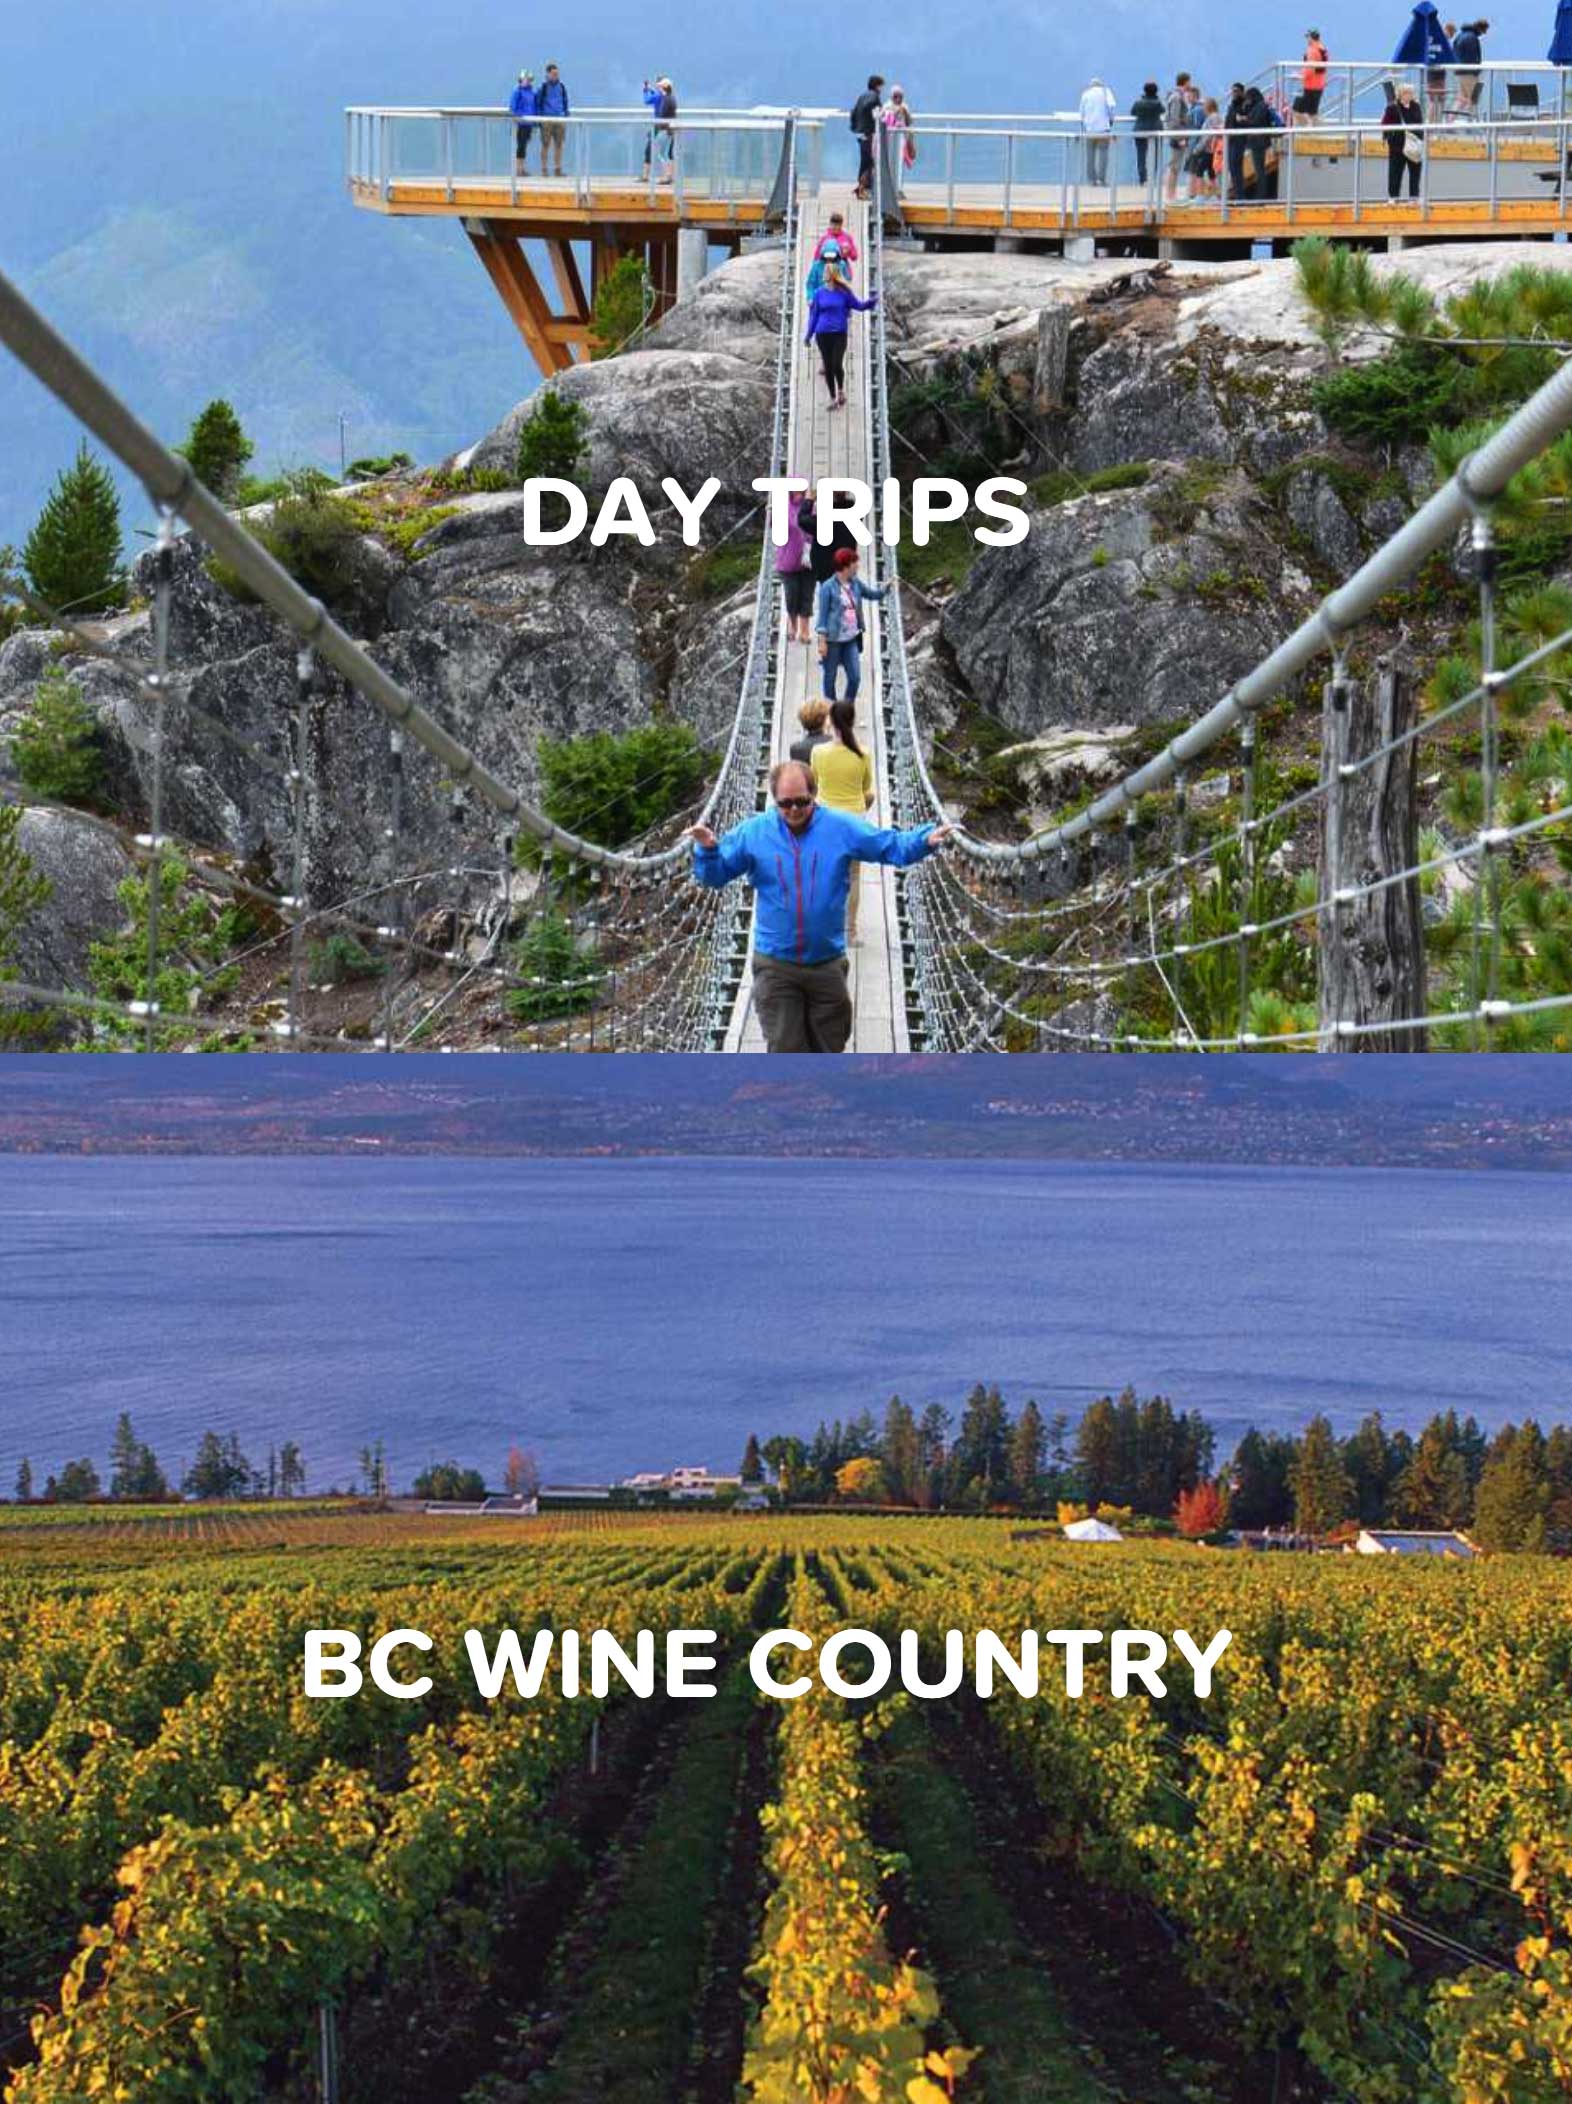 Vancouver’s Tourism Website